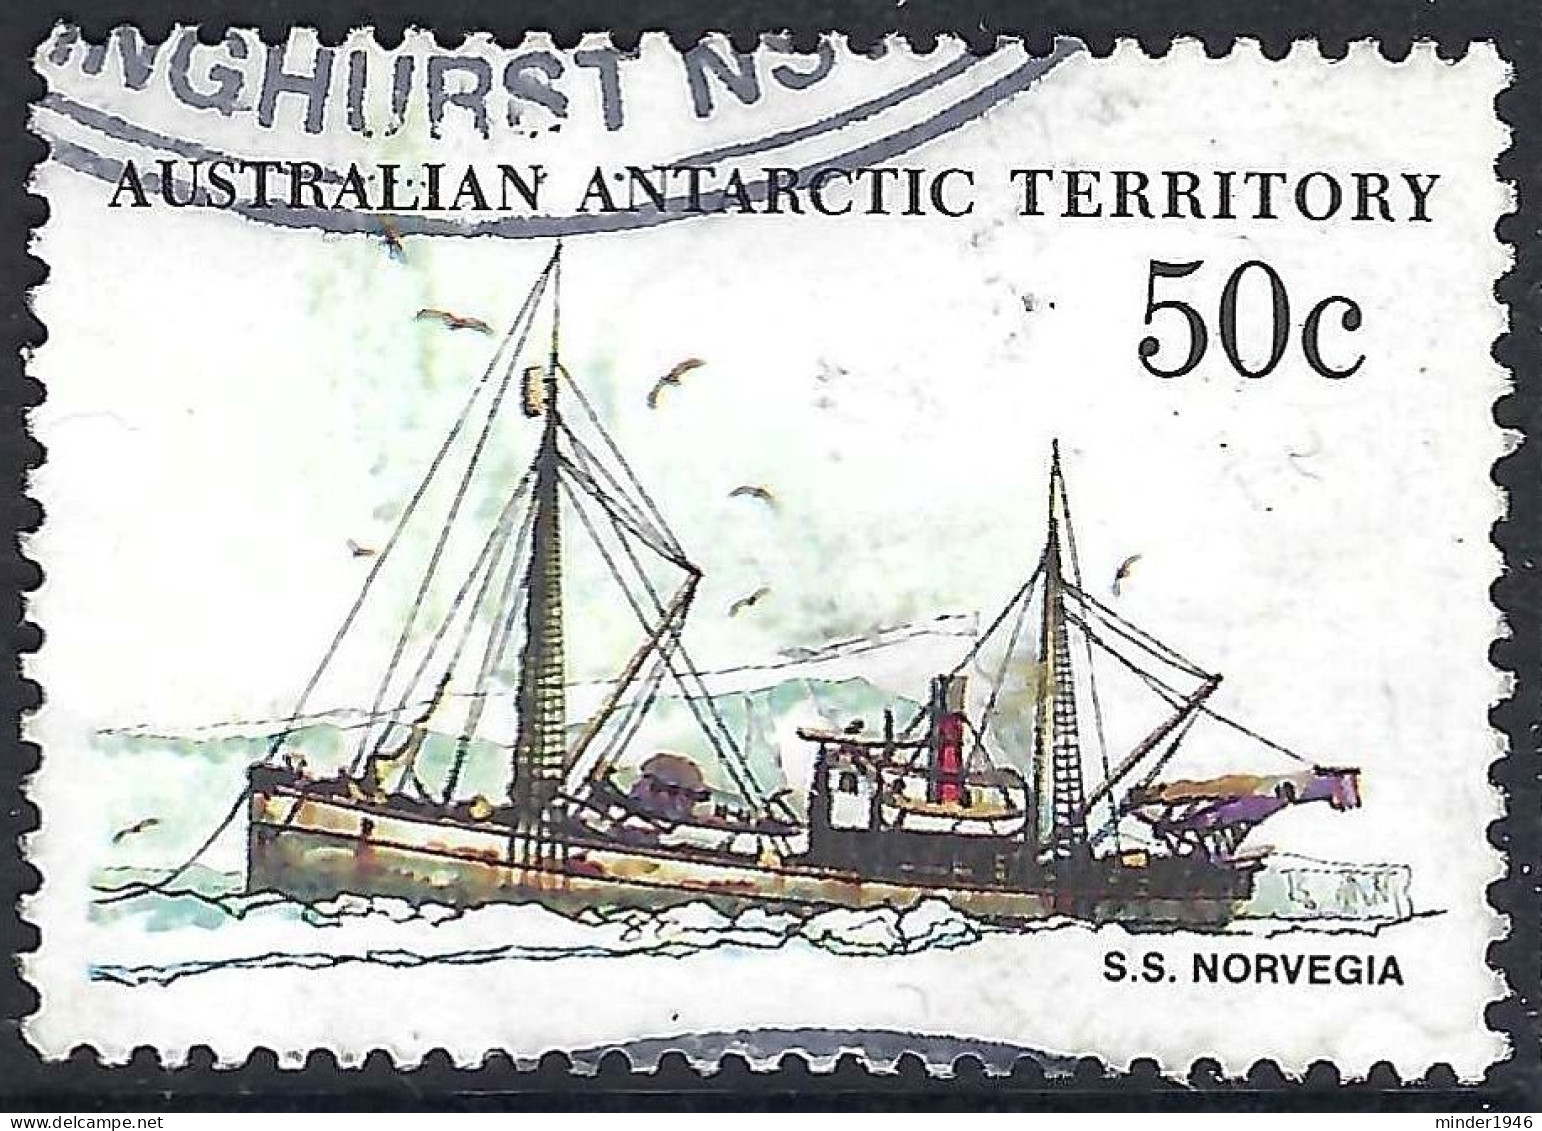 AUSTRALIAN ANTARCTIC TERRITORY (AAT) 1979 QEII 50c Multicoloured 'Ships, S.S Norvegia SG50 FU - Used Stamps